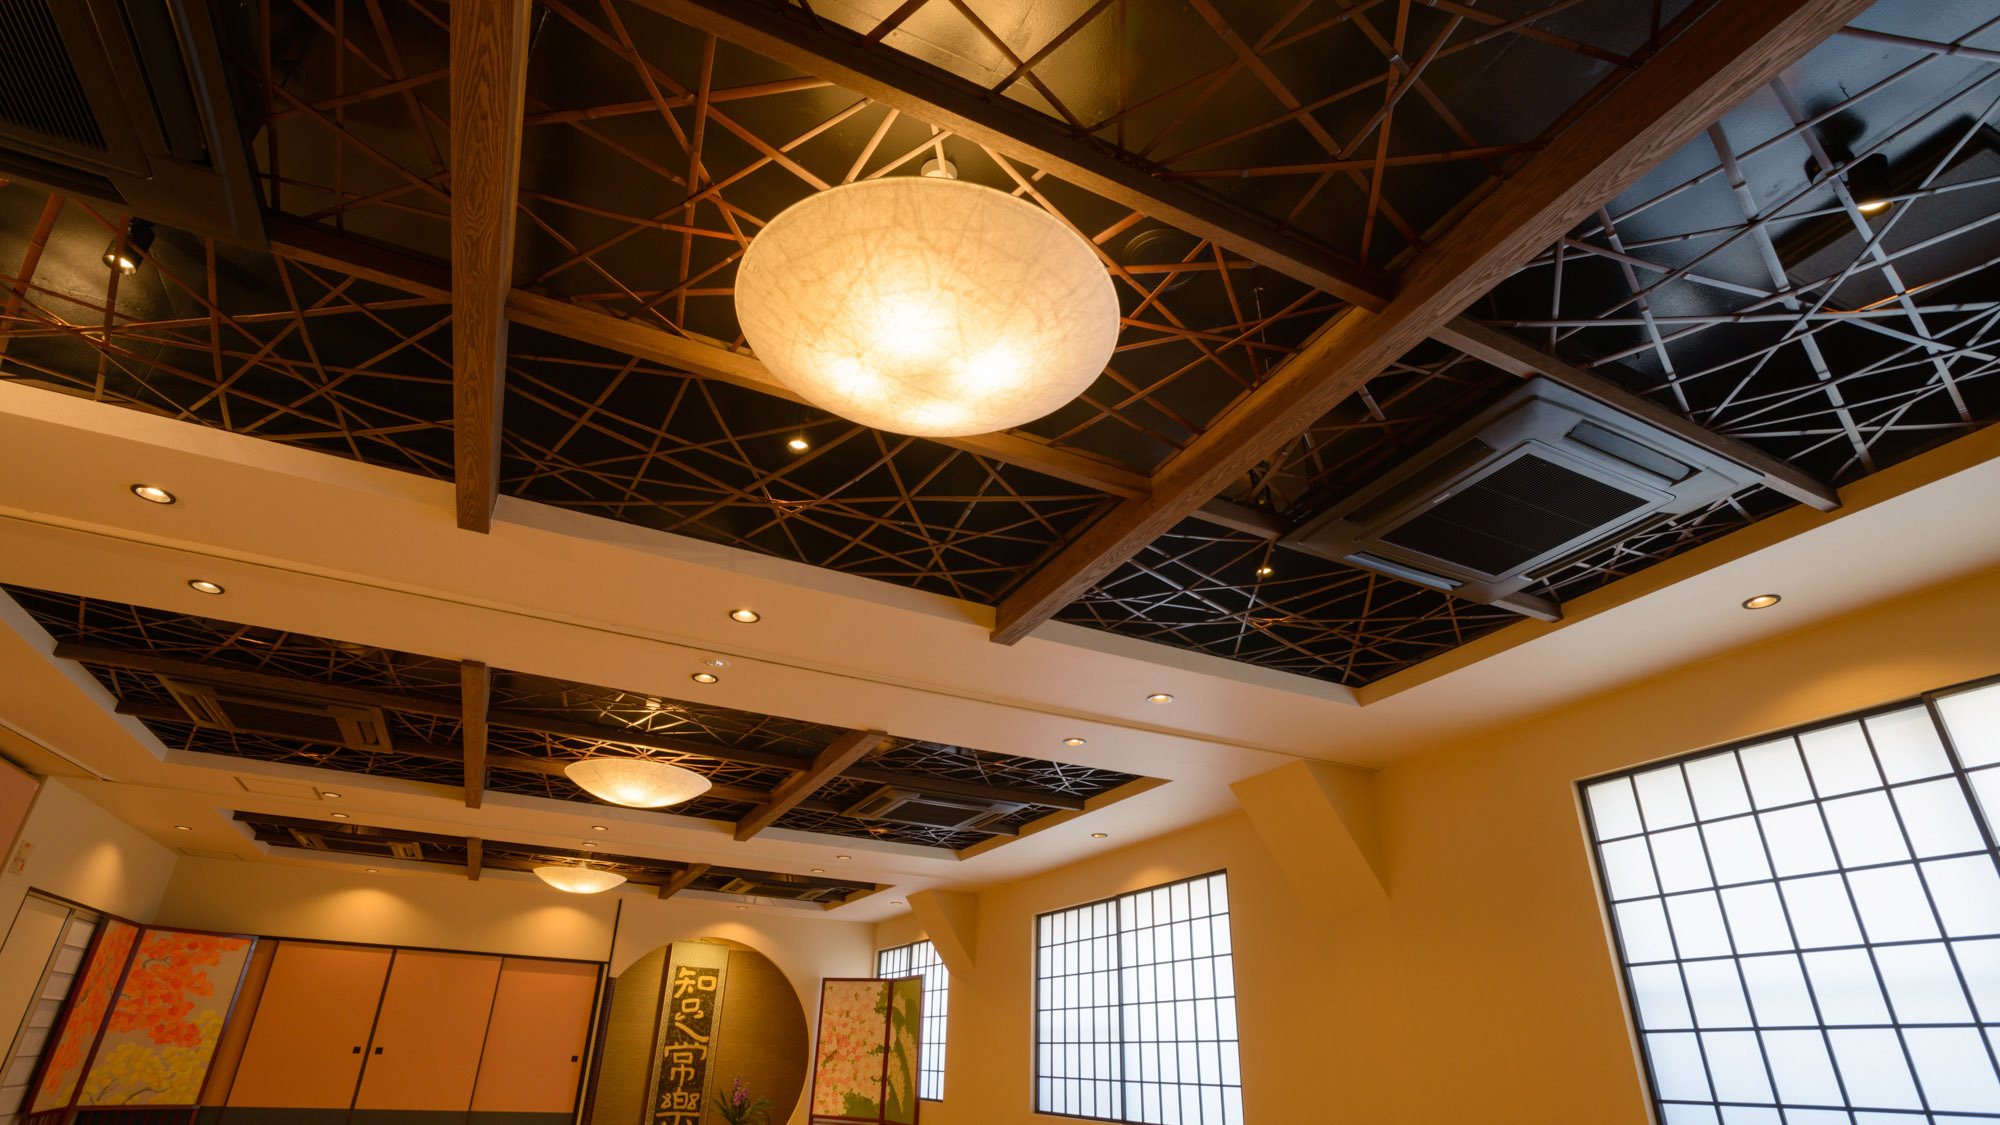 ・【大広間】竹の網目の天井がアクセント、モダンさが非日常を演出します